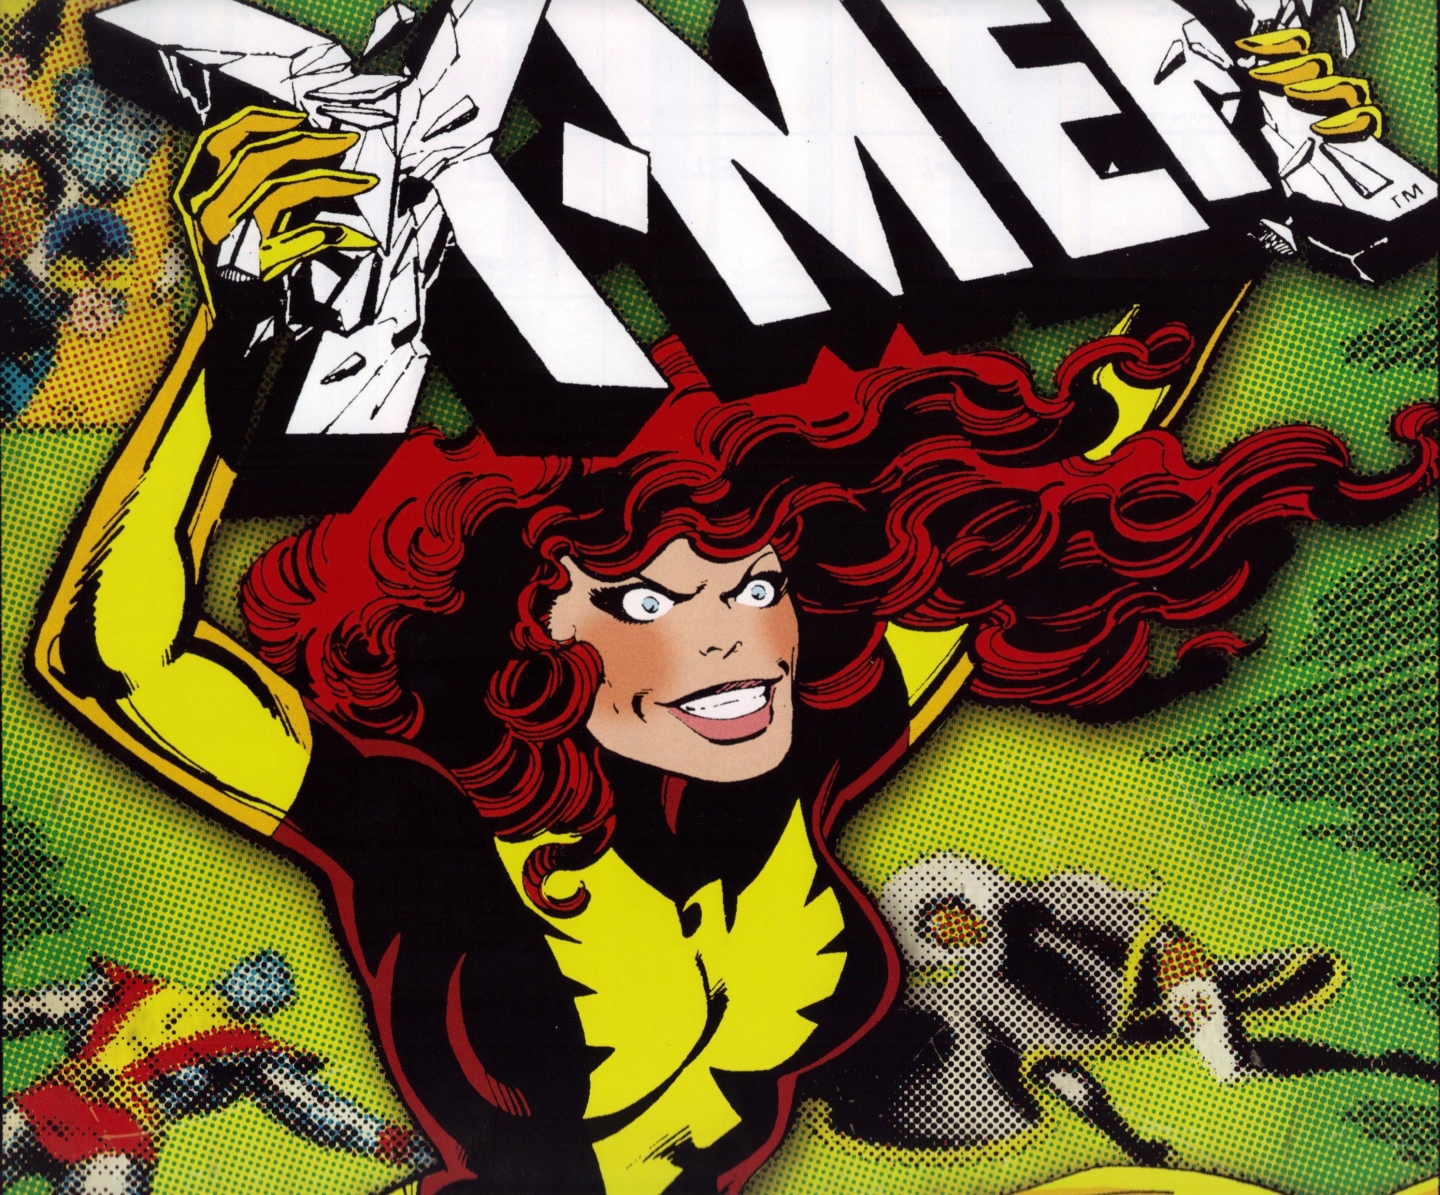 Скачать обои бесплатно Комиксы, Люди Икс, Феникс (Marvel Comics) картинка на рабочий стол ПК